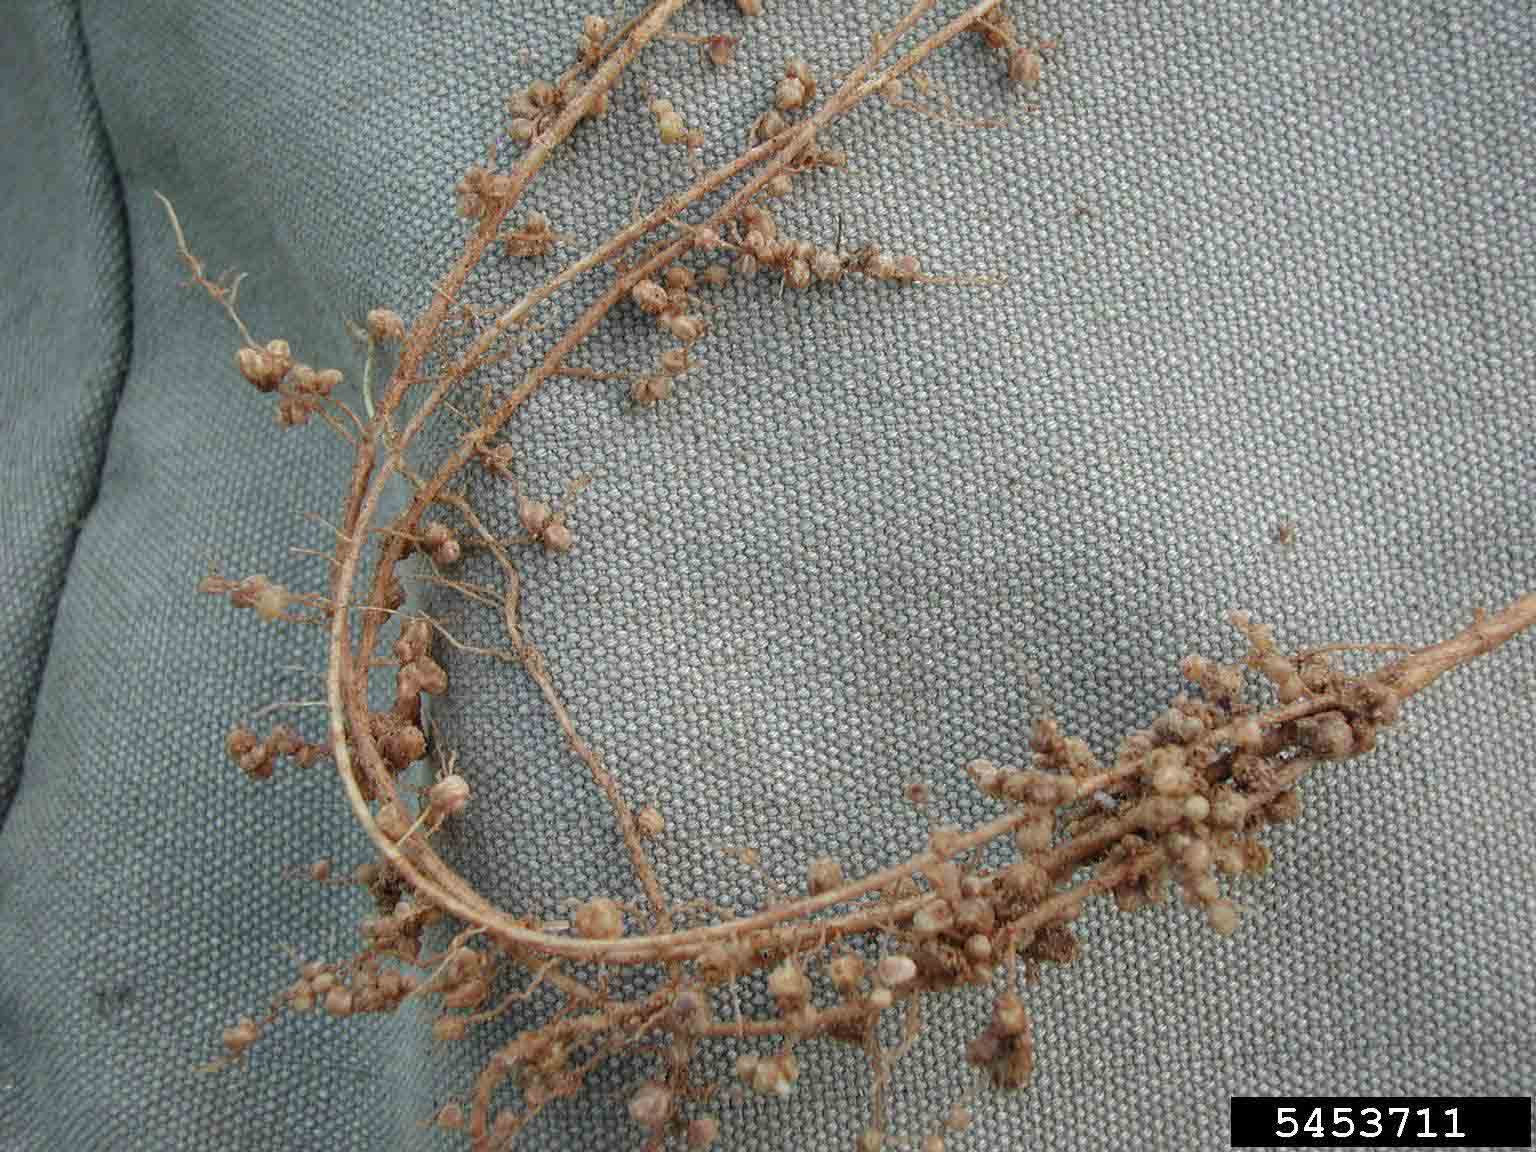 Black locust root nodules